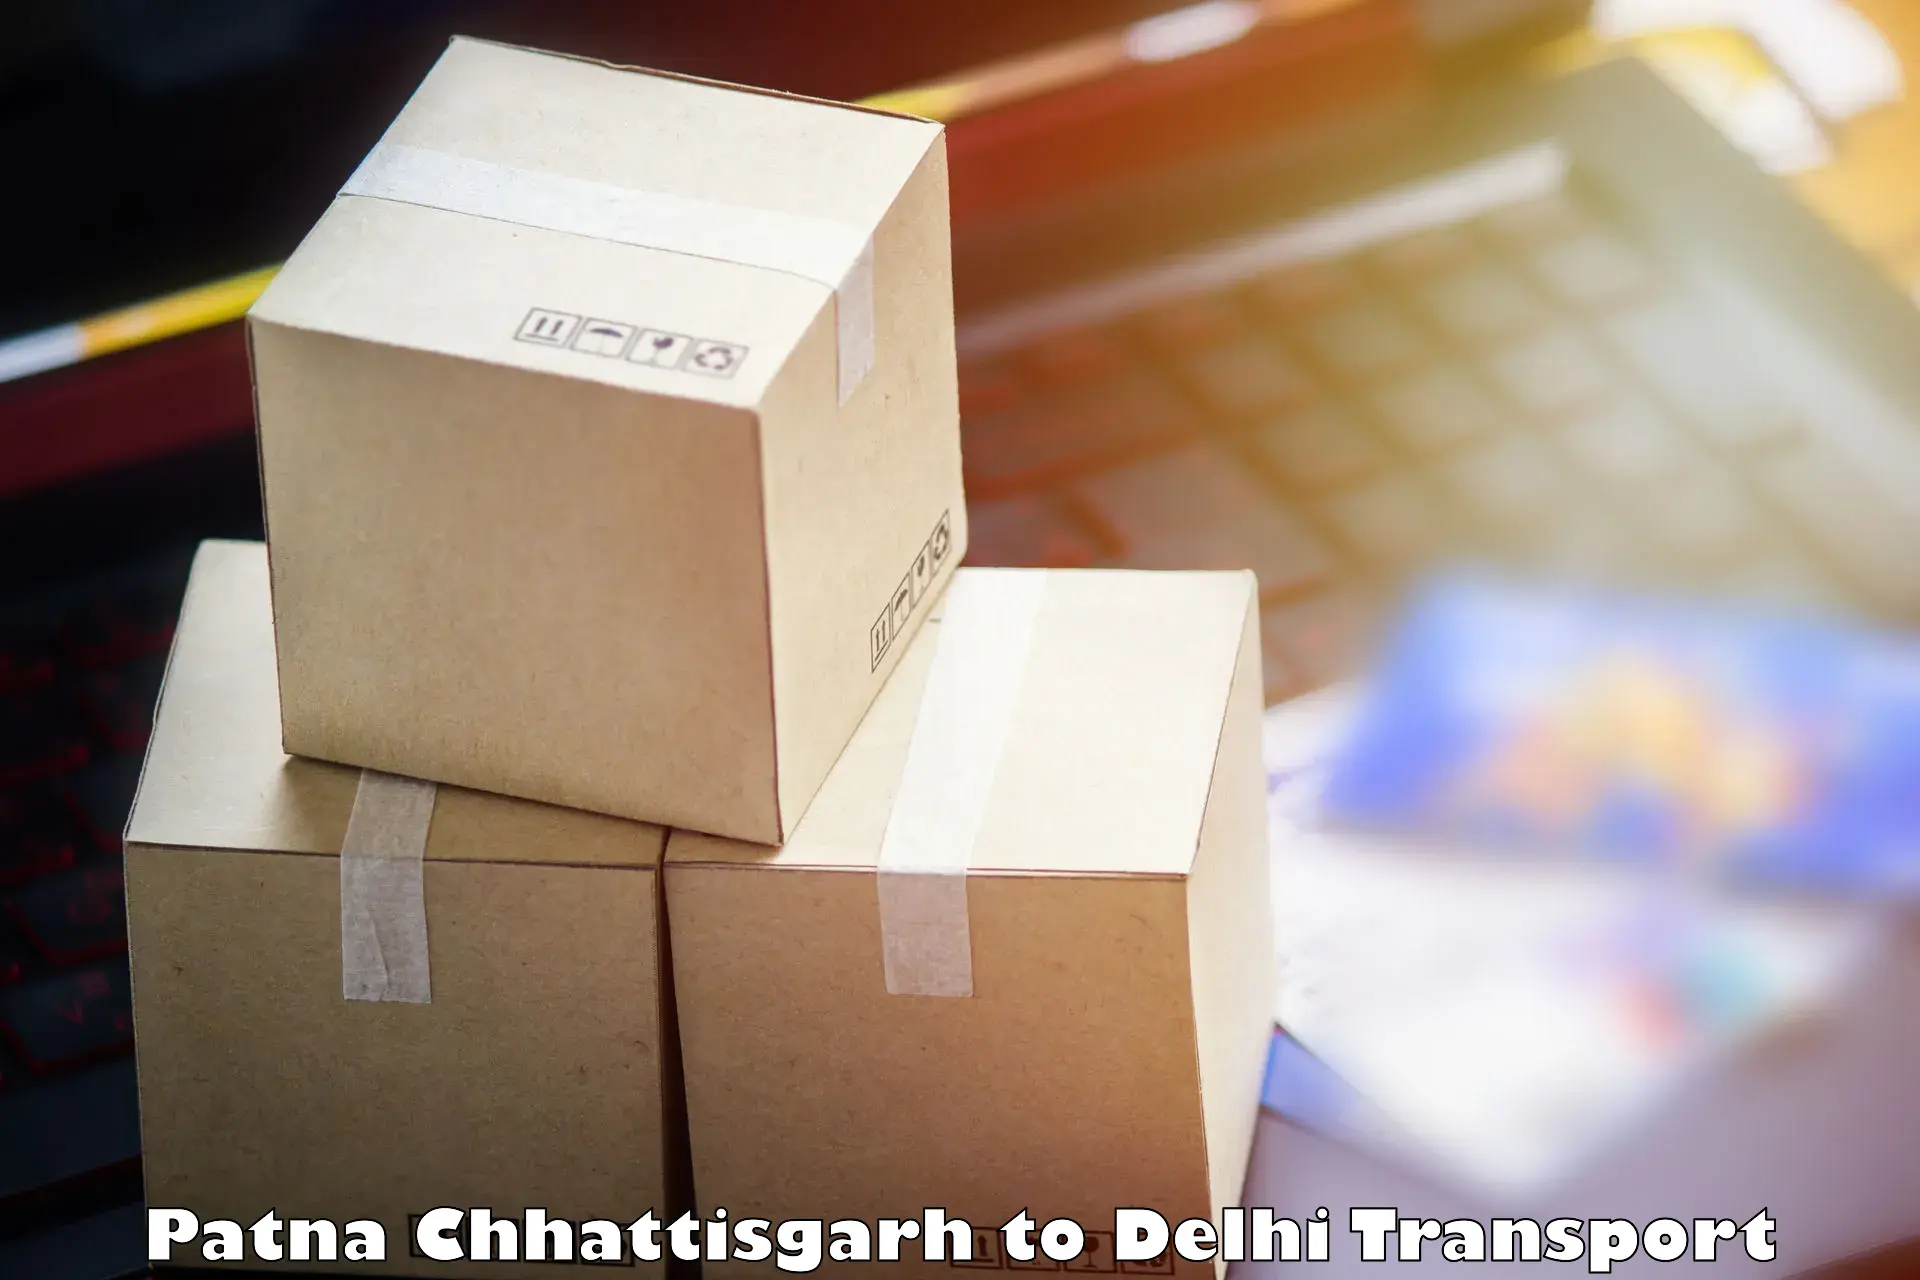 Transportation solution services Patna Chhattisgarh to East Delhi